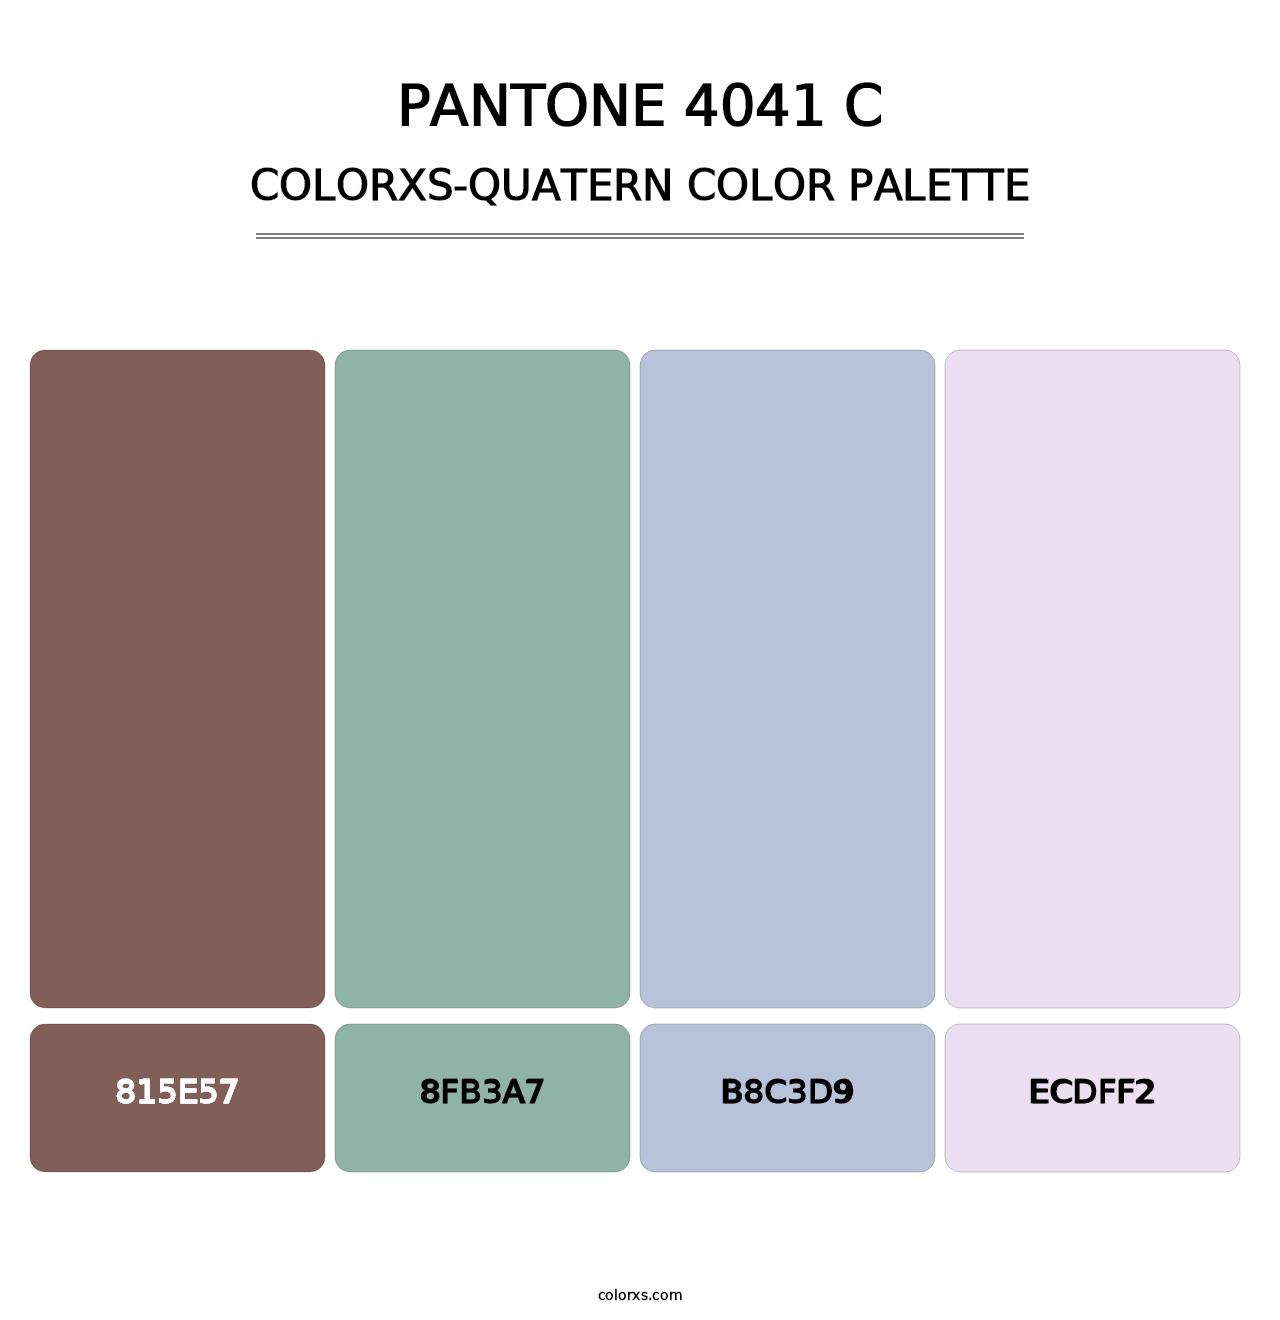 PANTONE 4041 C - Colorxs Quatern Palette